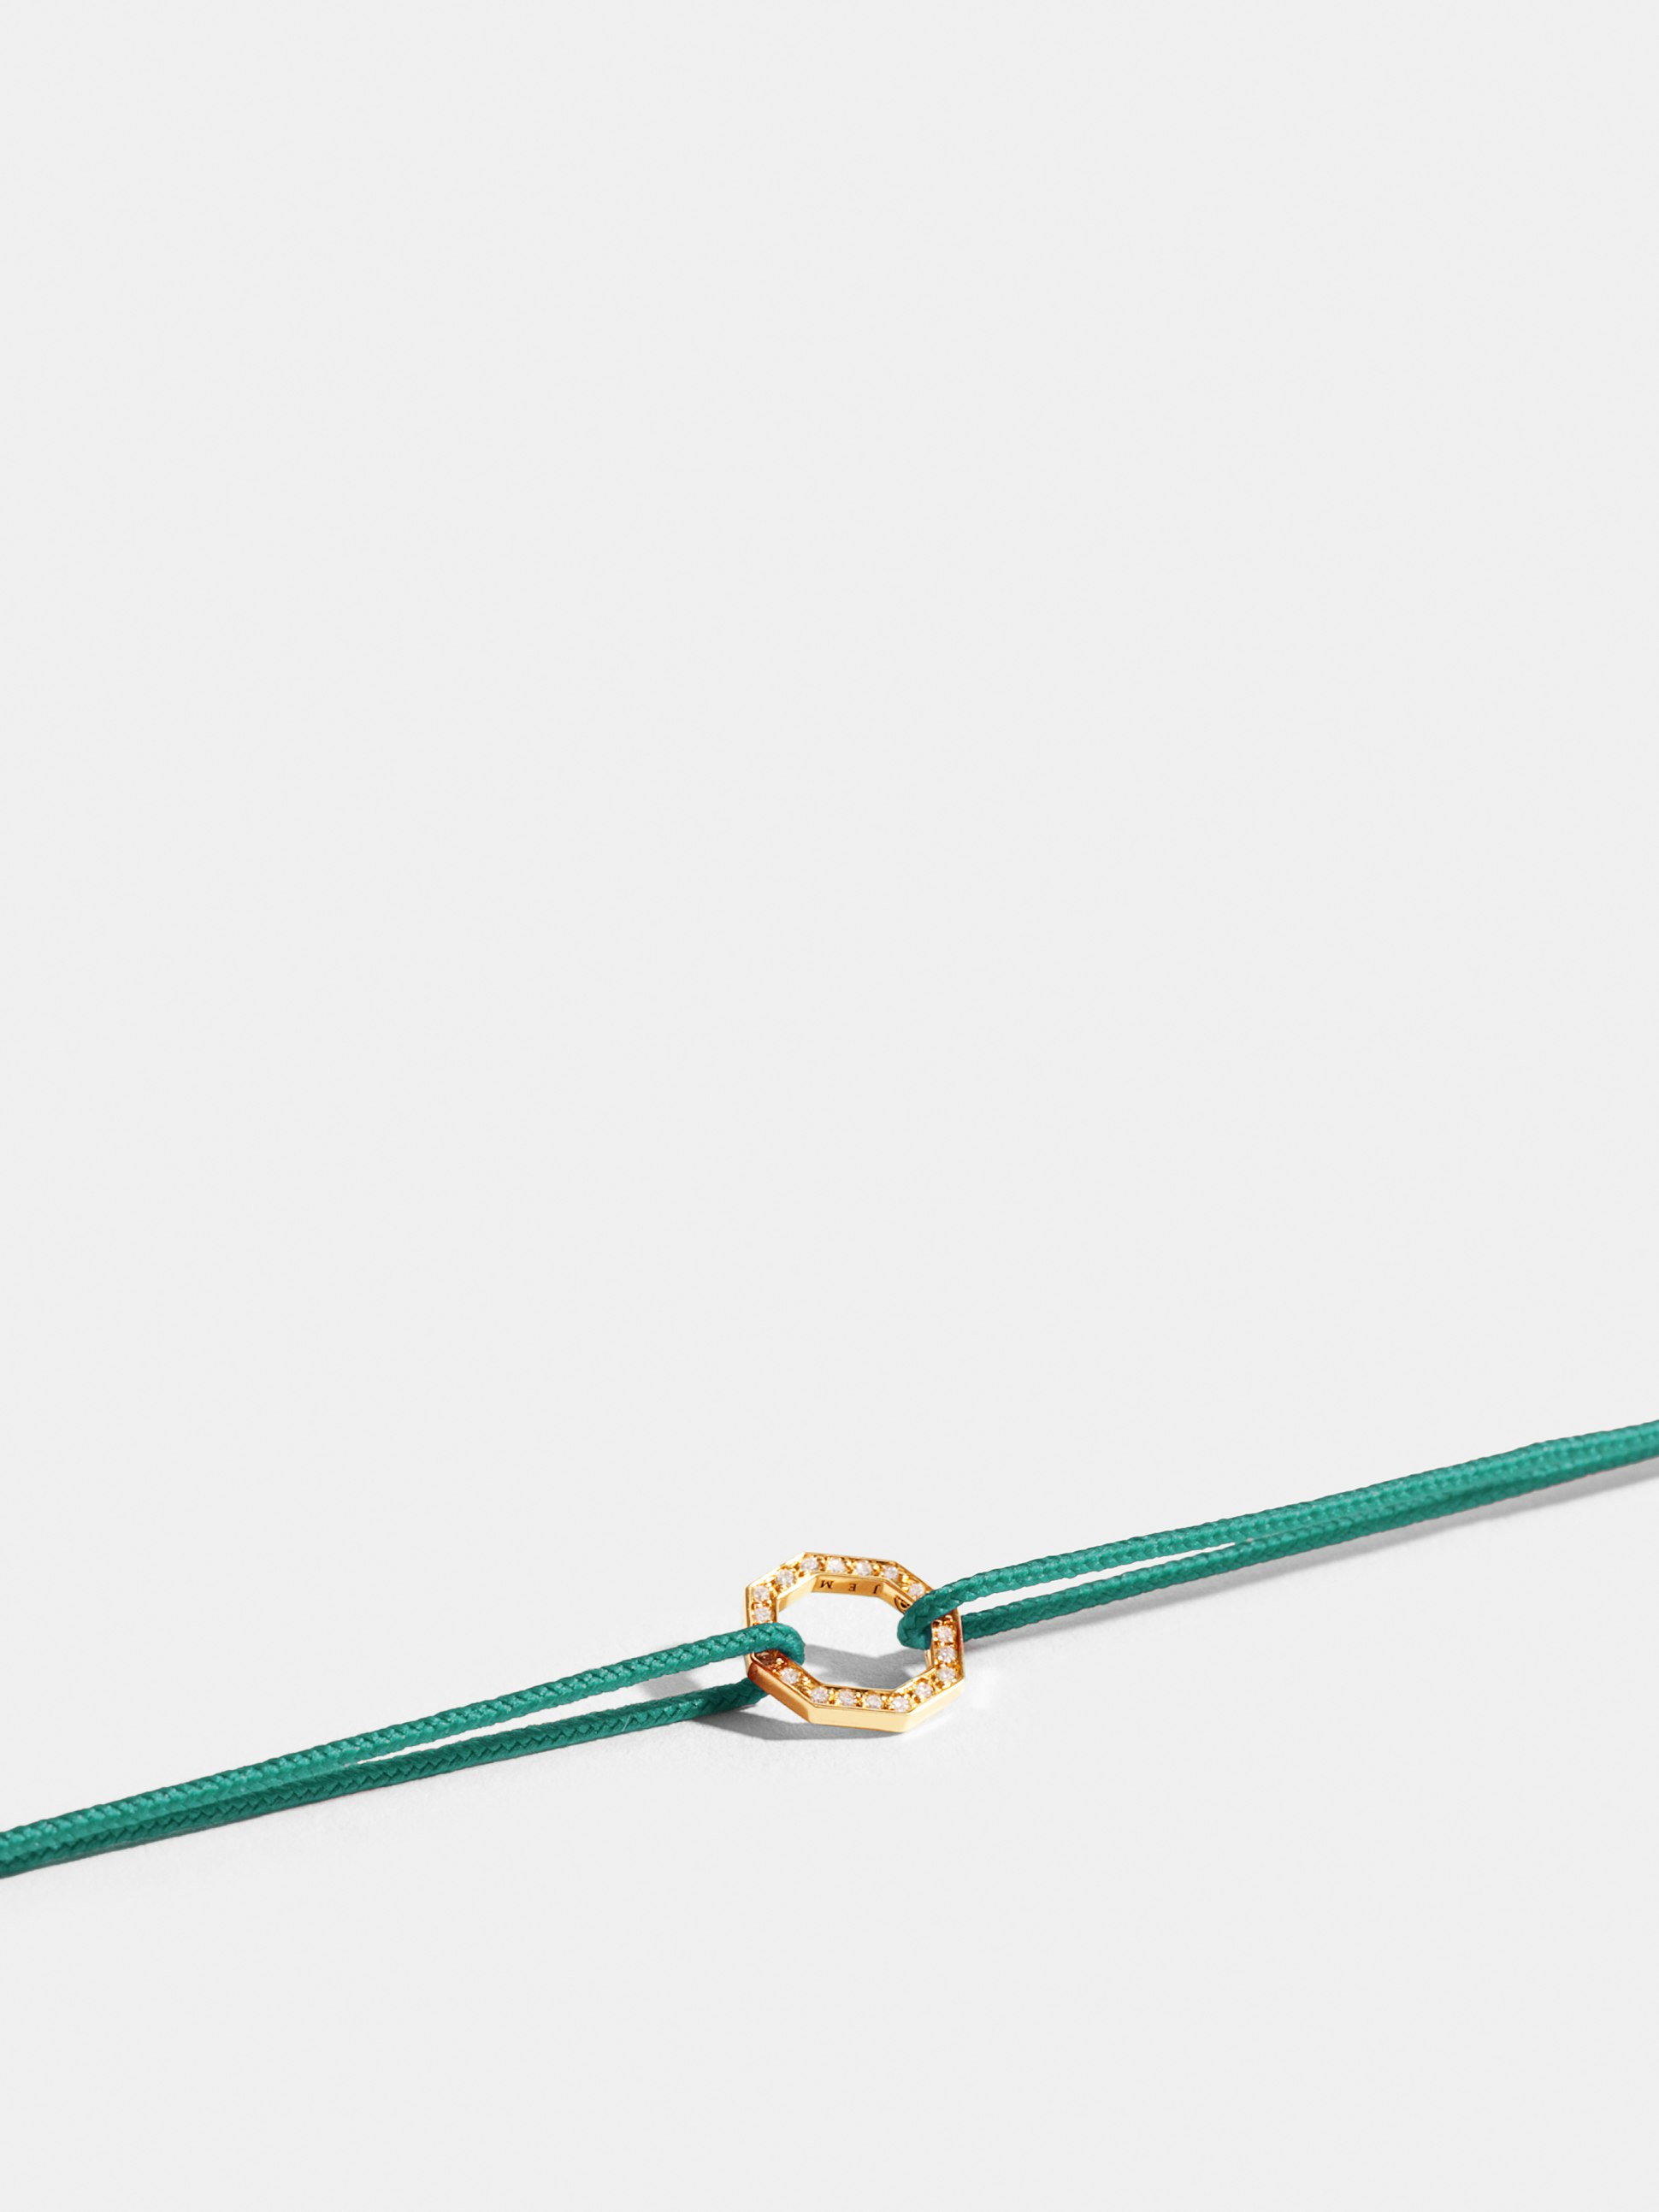 Motif Octogone en Or jaune éthique 18 carats certifié Fairmined et pavé de diamants de synthèse, sur cordon bleu turquoise.